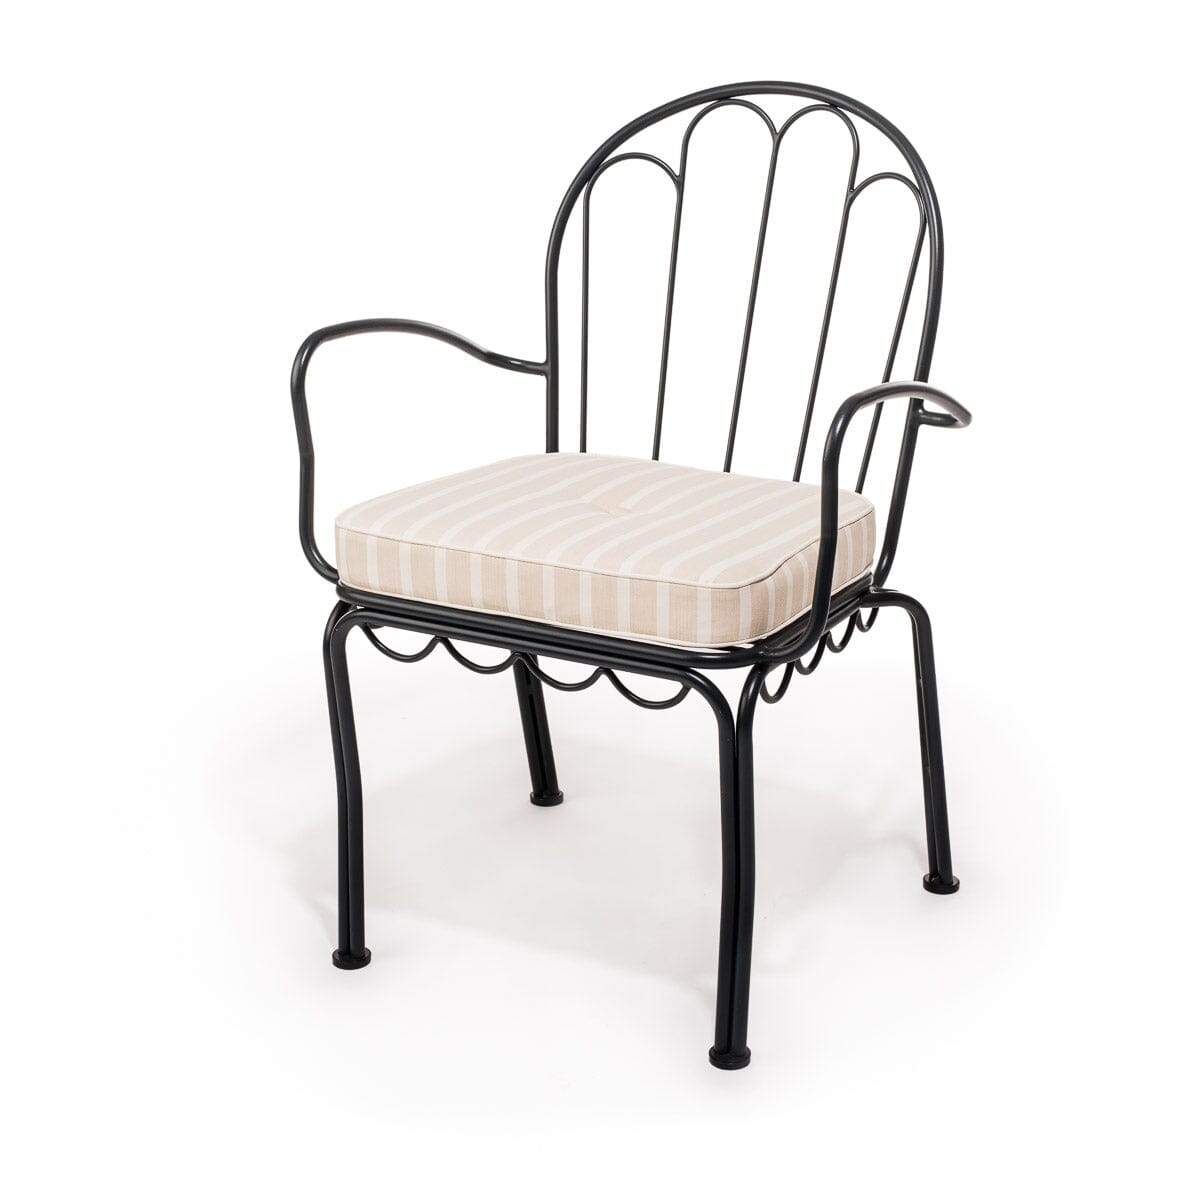 The Al Fresco Chair Cushion - Monaco Natural Stripe Al Fresco Chair Cushion Business & Pleasure Co 